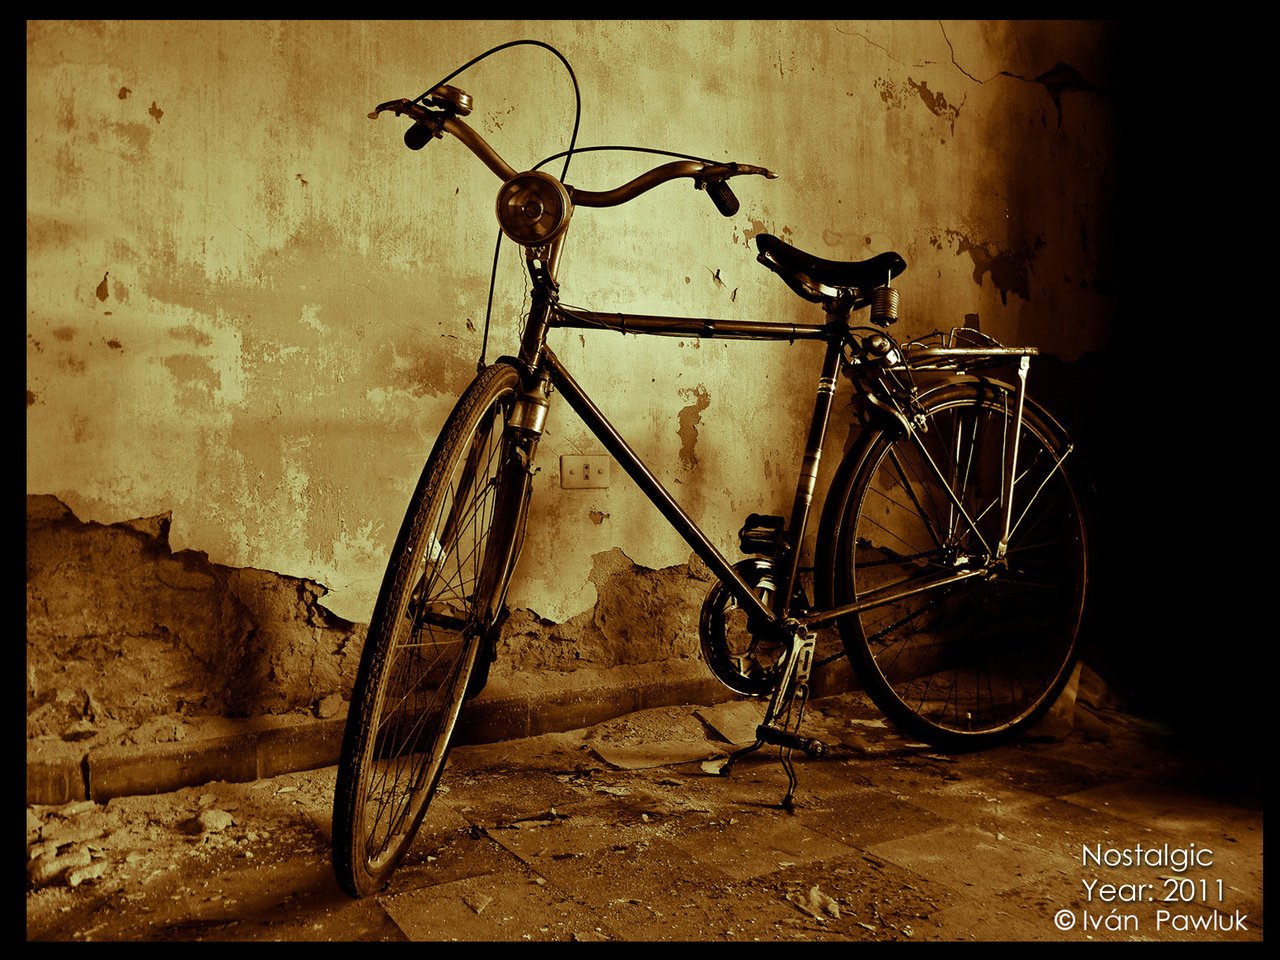 Nostalgic bike by ipawluk on